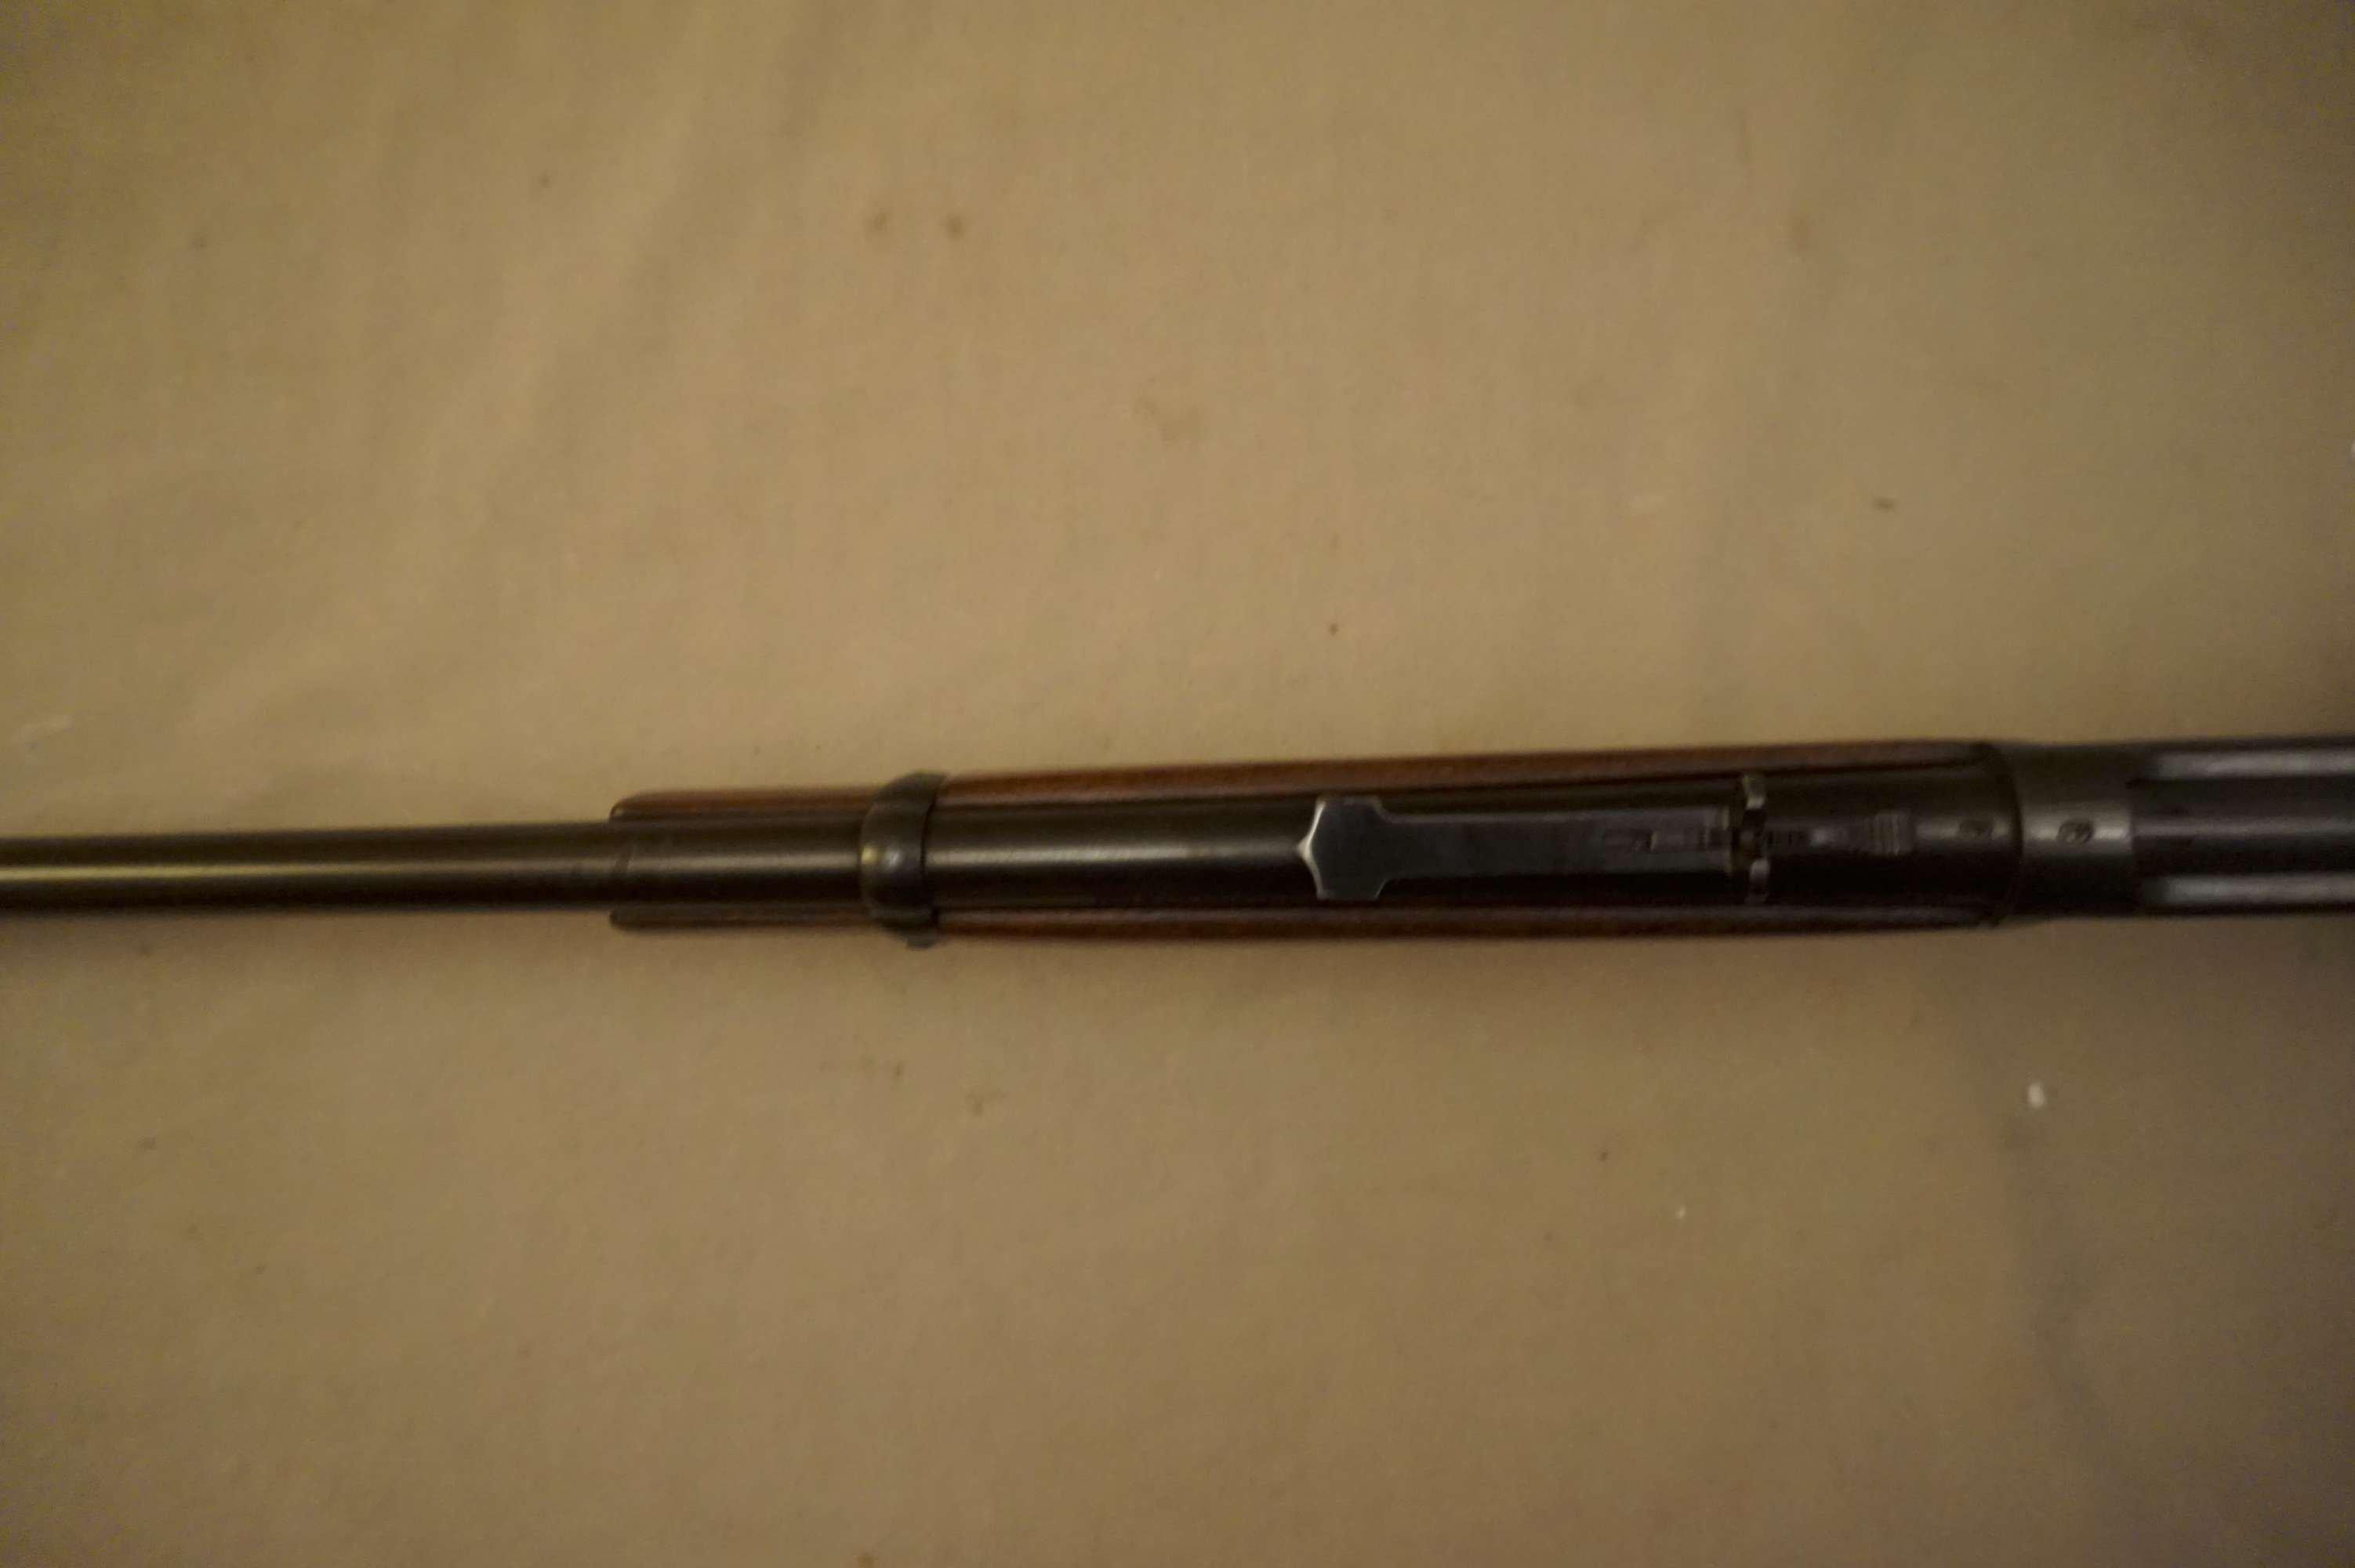 Winchester M. 94 .25-35 L/A Carbine